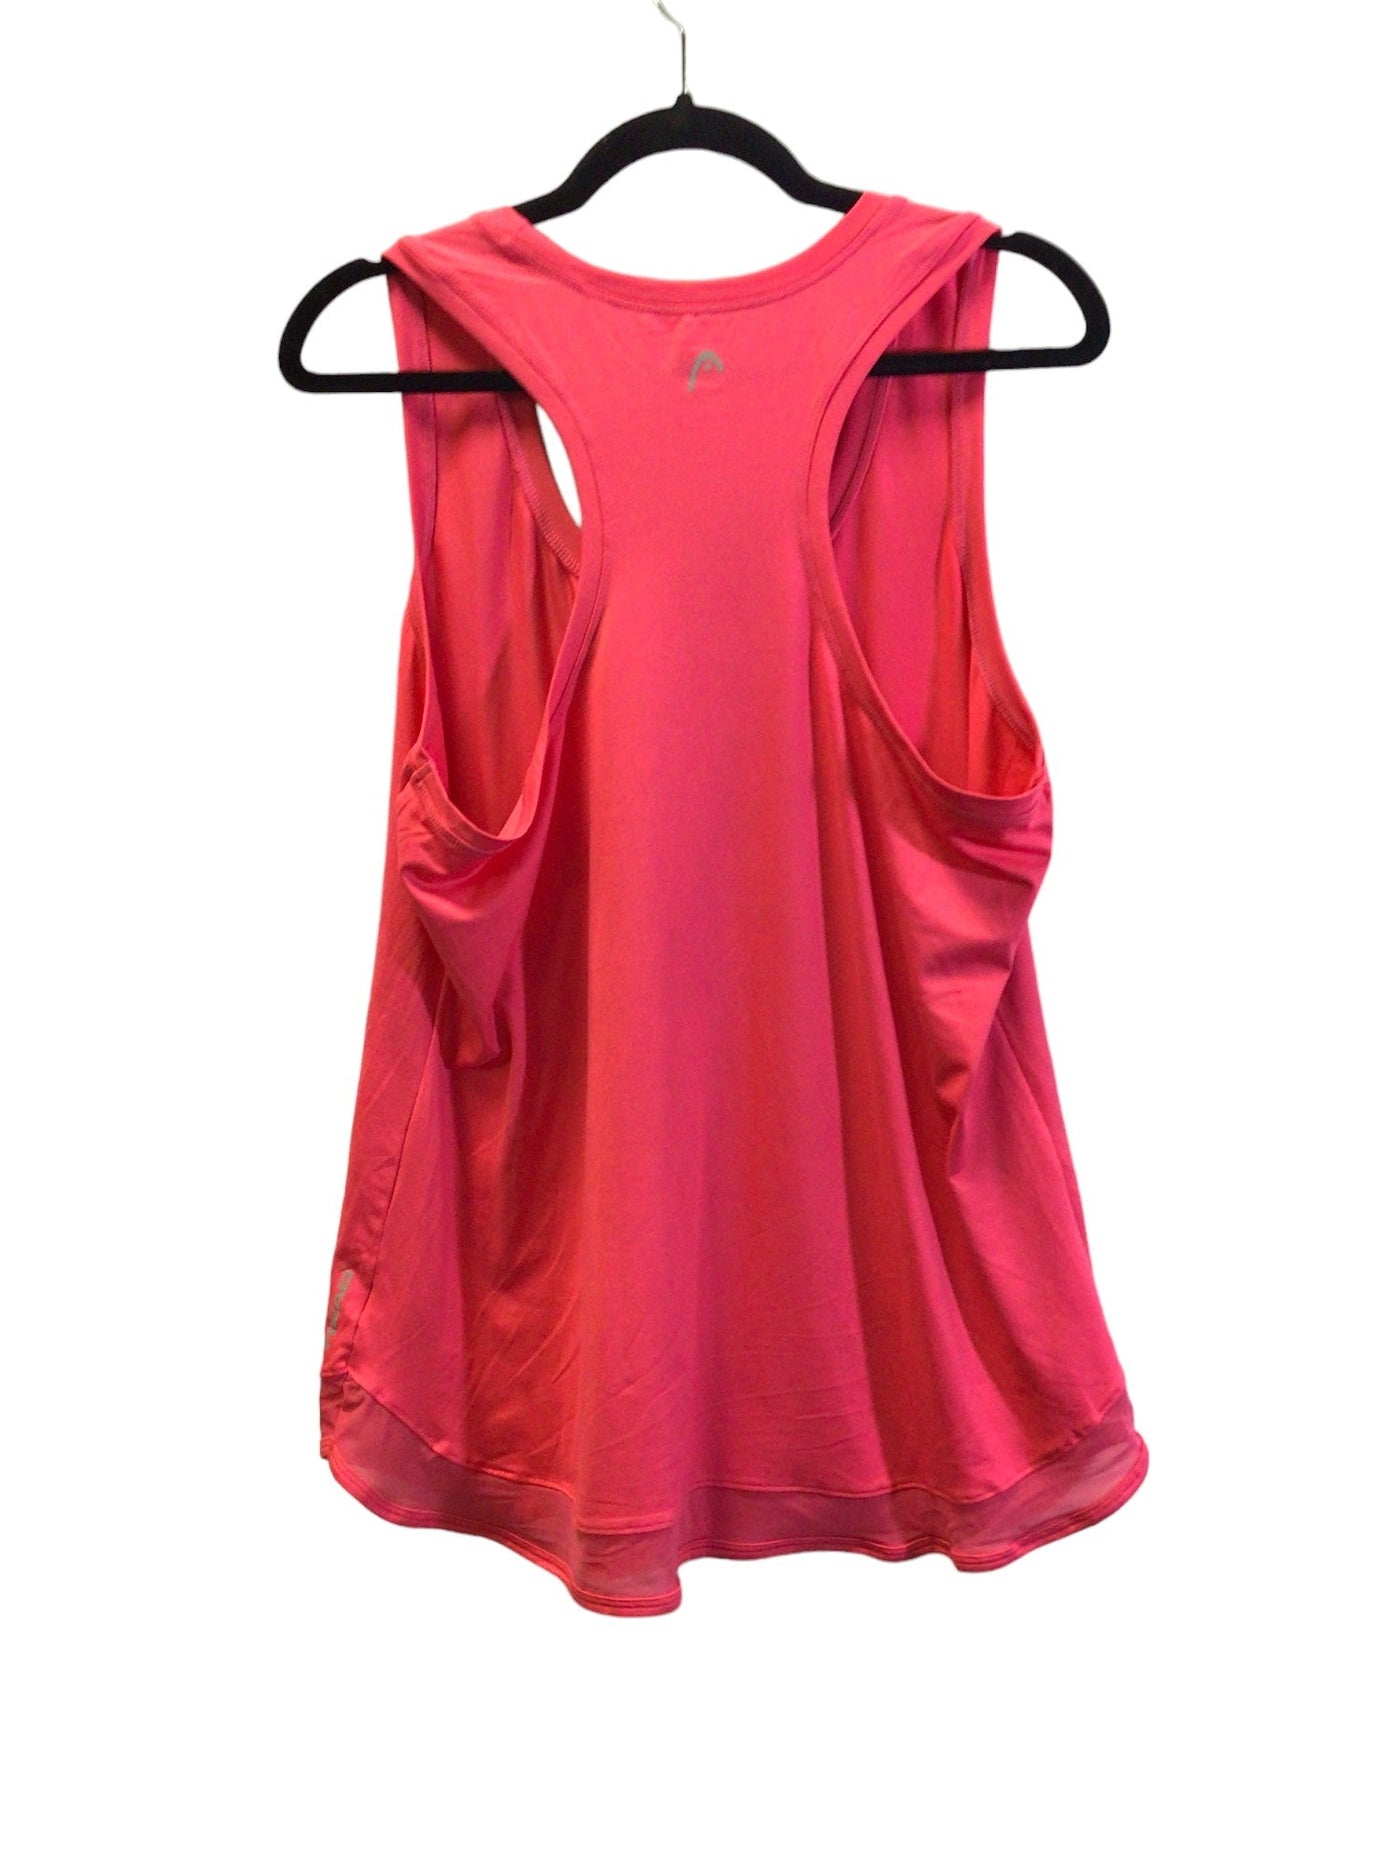 HEAD Women Activewear Tops Regular fit in Pink - Size XL | 13 $ KOOP